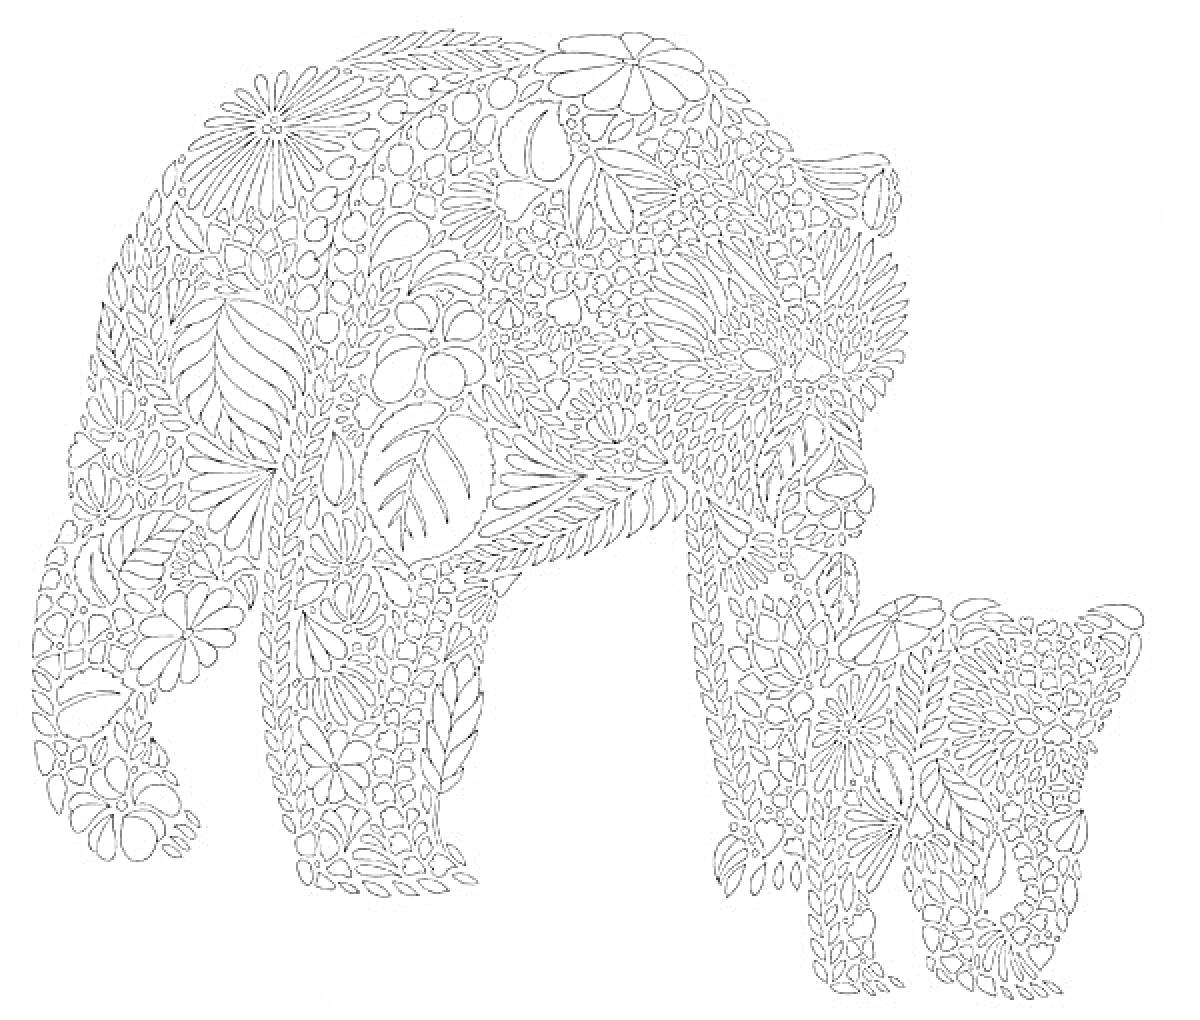 Раскраска Медведи, украшенные цветами и листьями